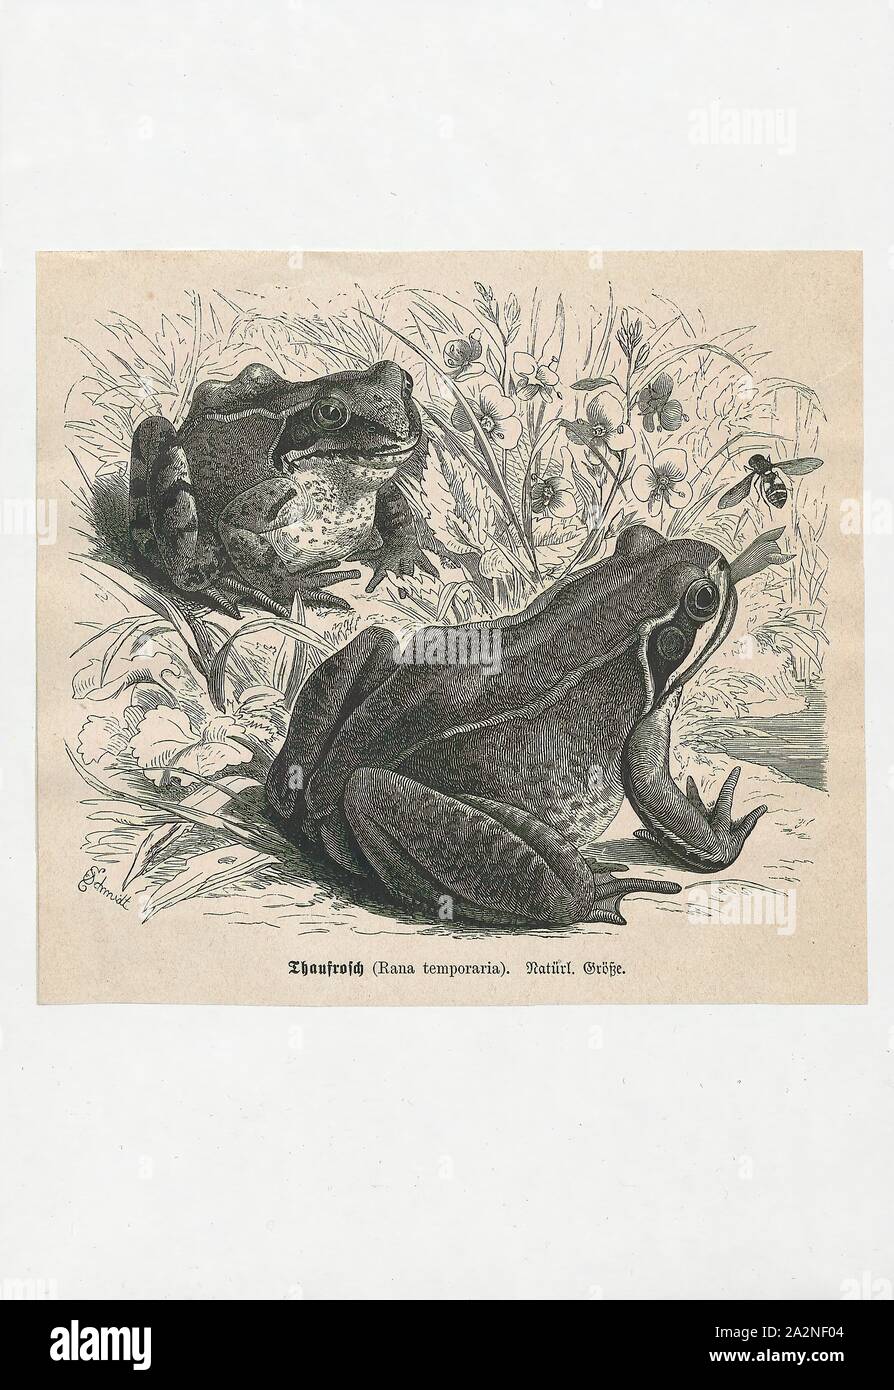 Rana temporaria, Imprimer, la grenouille rousse (Rana temporaria), également connu sous le nom de l'intérêt commun européen commun, grenouille, grenouille ou européenne, est une grenouille herbe semi-aquatiques amphibien de la famille des Ranidés, trouvés dans une grande partie de l'Europe au nord jusqu'à la Scandinavie et à l'est jusqu'à l'Oural, à l'exception de la plus grande partie de la péninsule ibérique, le sud de l'Italie, et le sud des Balkans. L'extrême-ouest il peut être trouvé est l'Irlande, où il a longtemps été pensé, à tort, d'être un tout des espèces introduites. On la trouve aussi en Asie, et vers l'est pour le Japon, 1700-1880. Banque D'Images